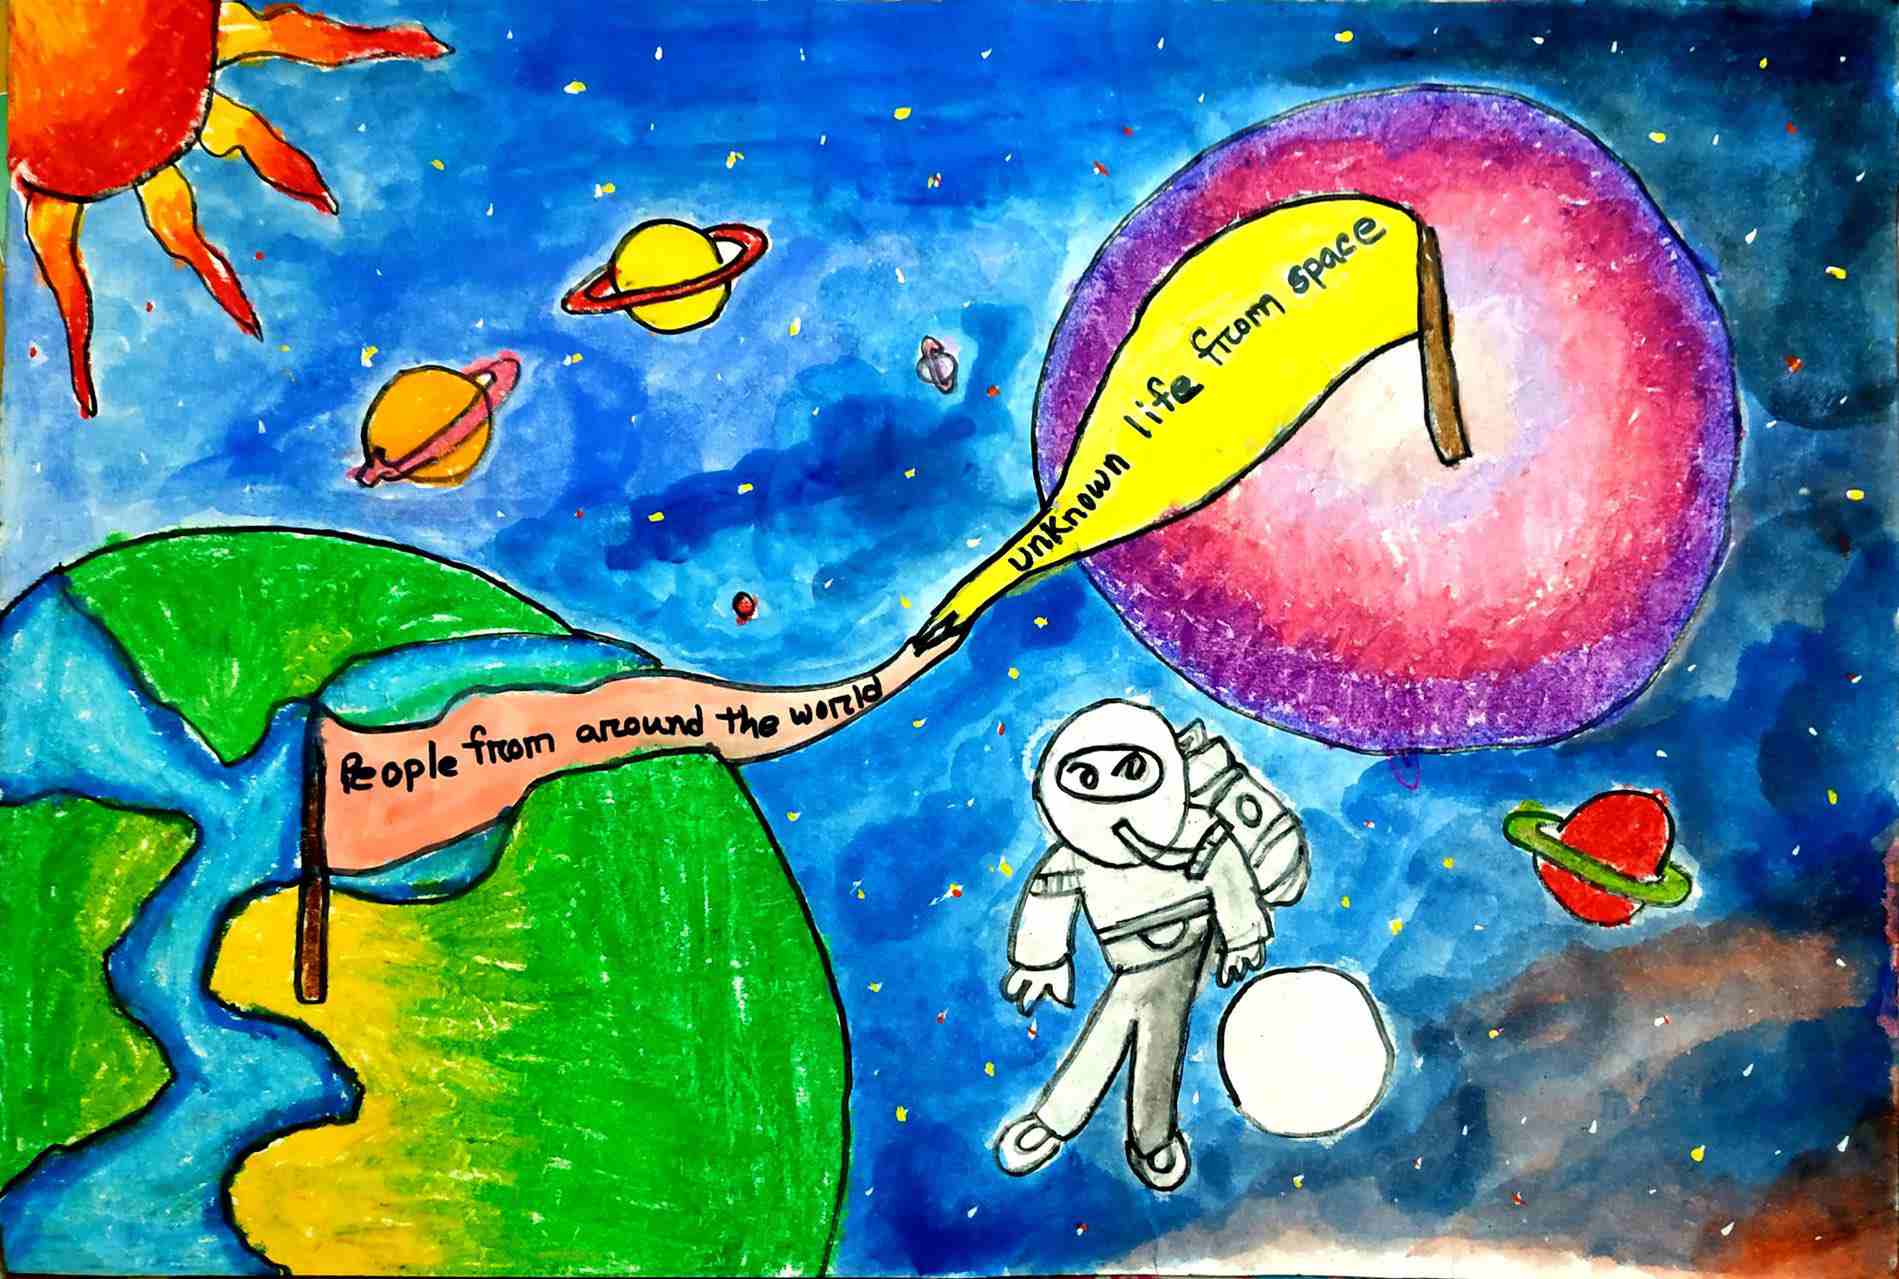 航天日绘画作品《问天之旅》,孟加拉国Sanzida Afrin